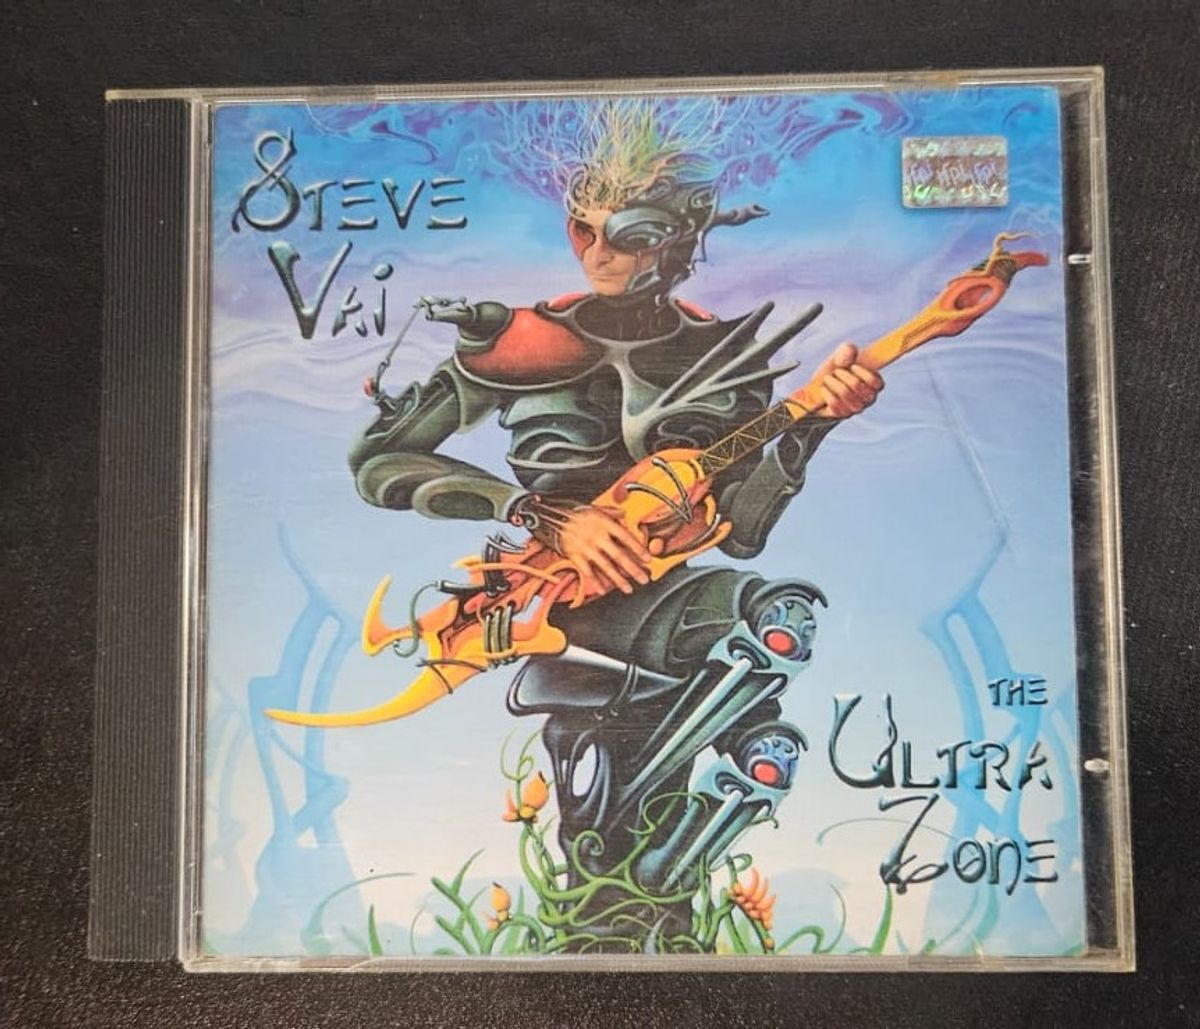 Cd Steve Vai - The Ultra Zone, Item de Música Usado 94257869